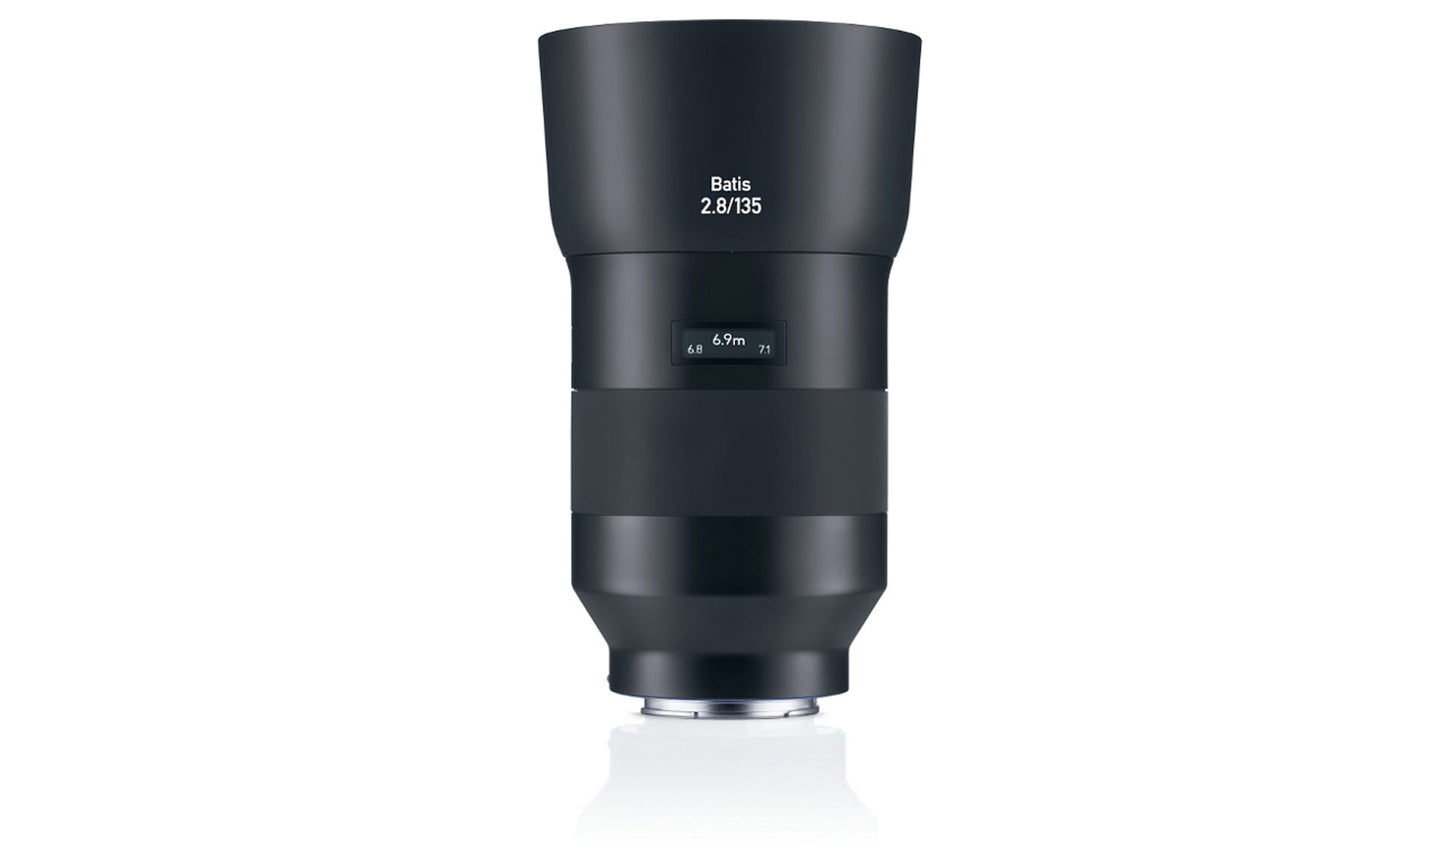 Zeiss Batis 135mm f/2.8 Lens for Sony E Mount